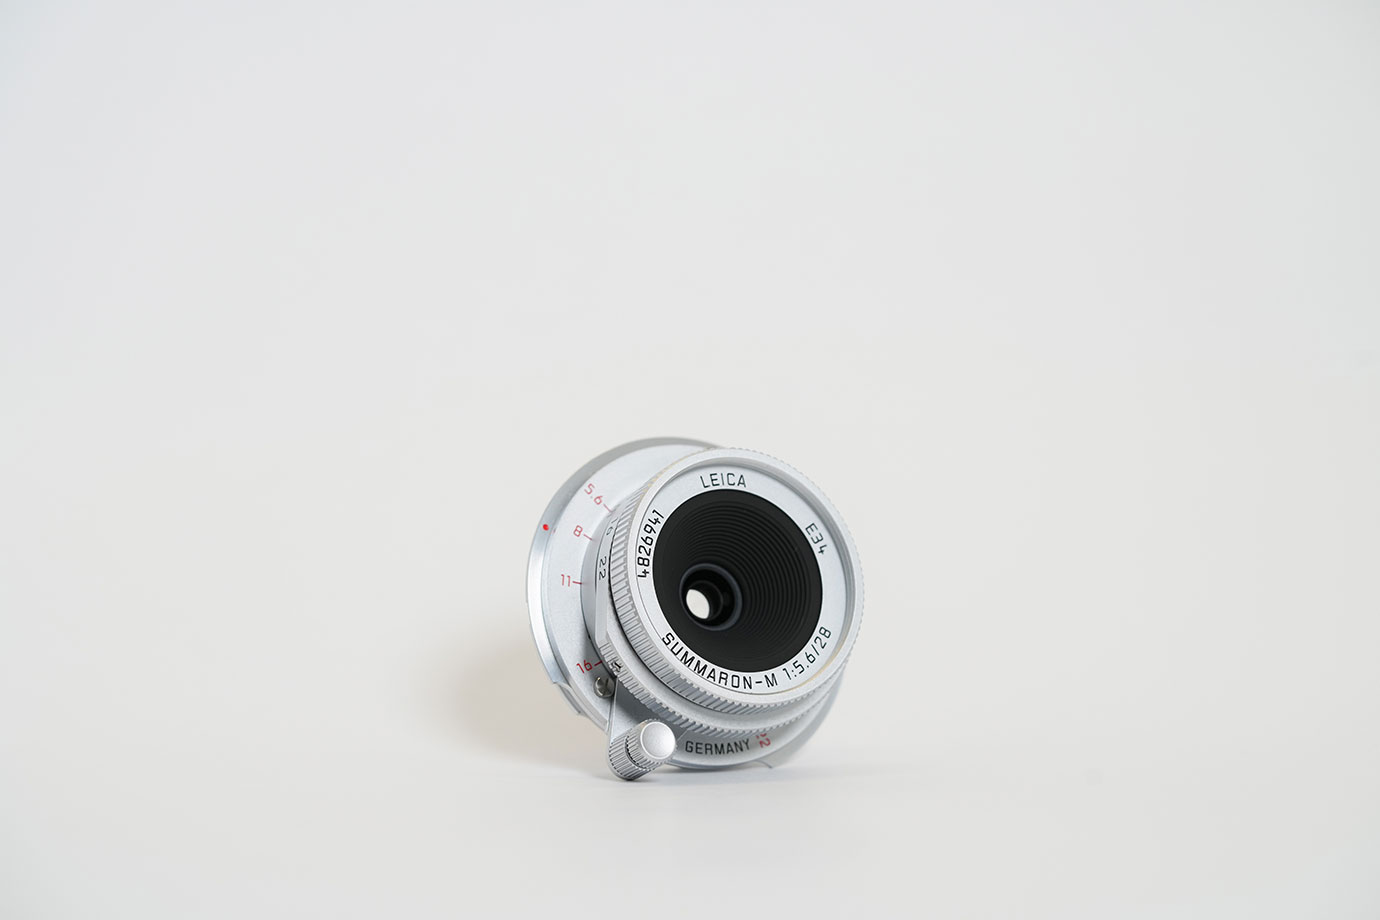 Leica Summaron-M 28/5.6